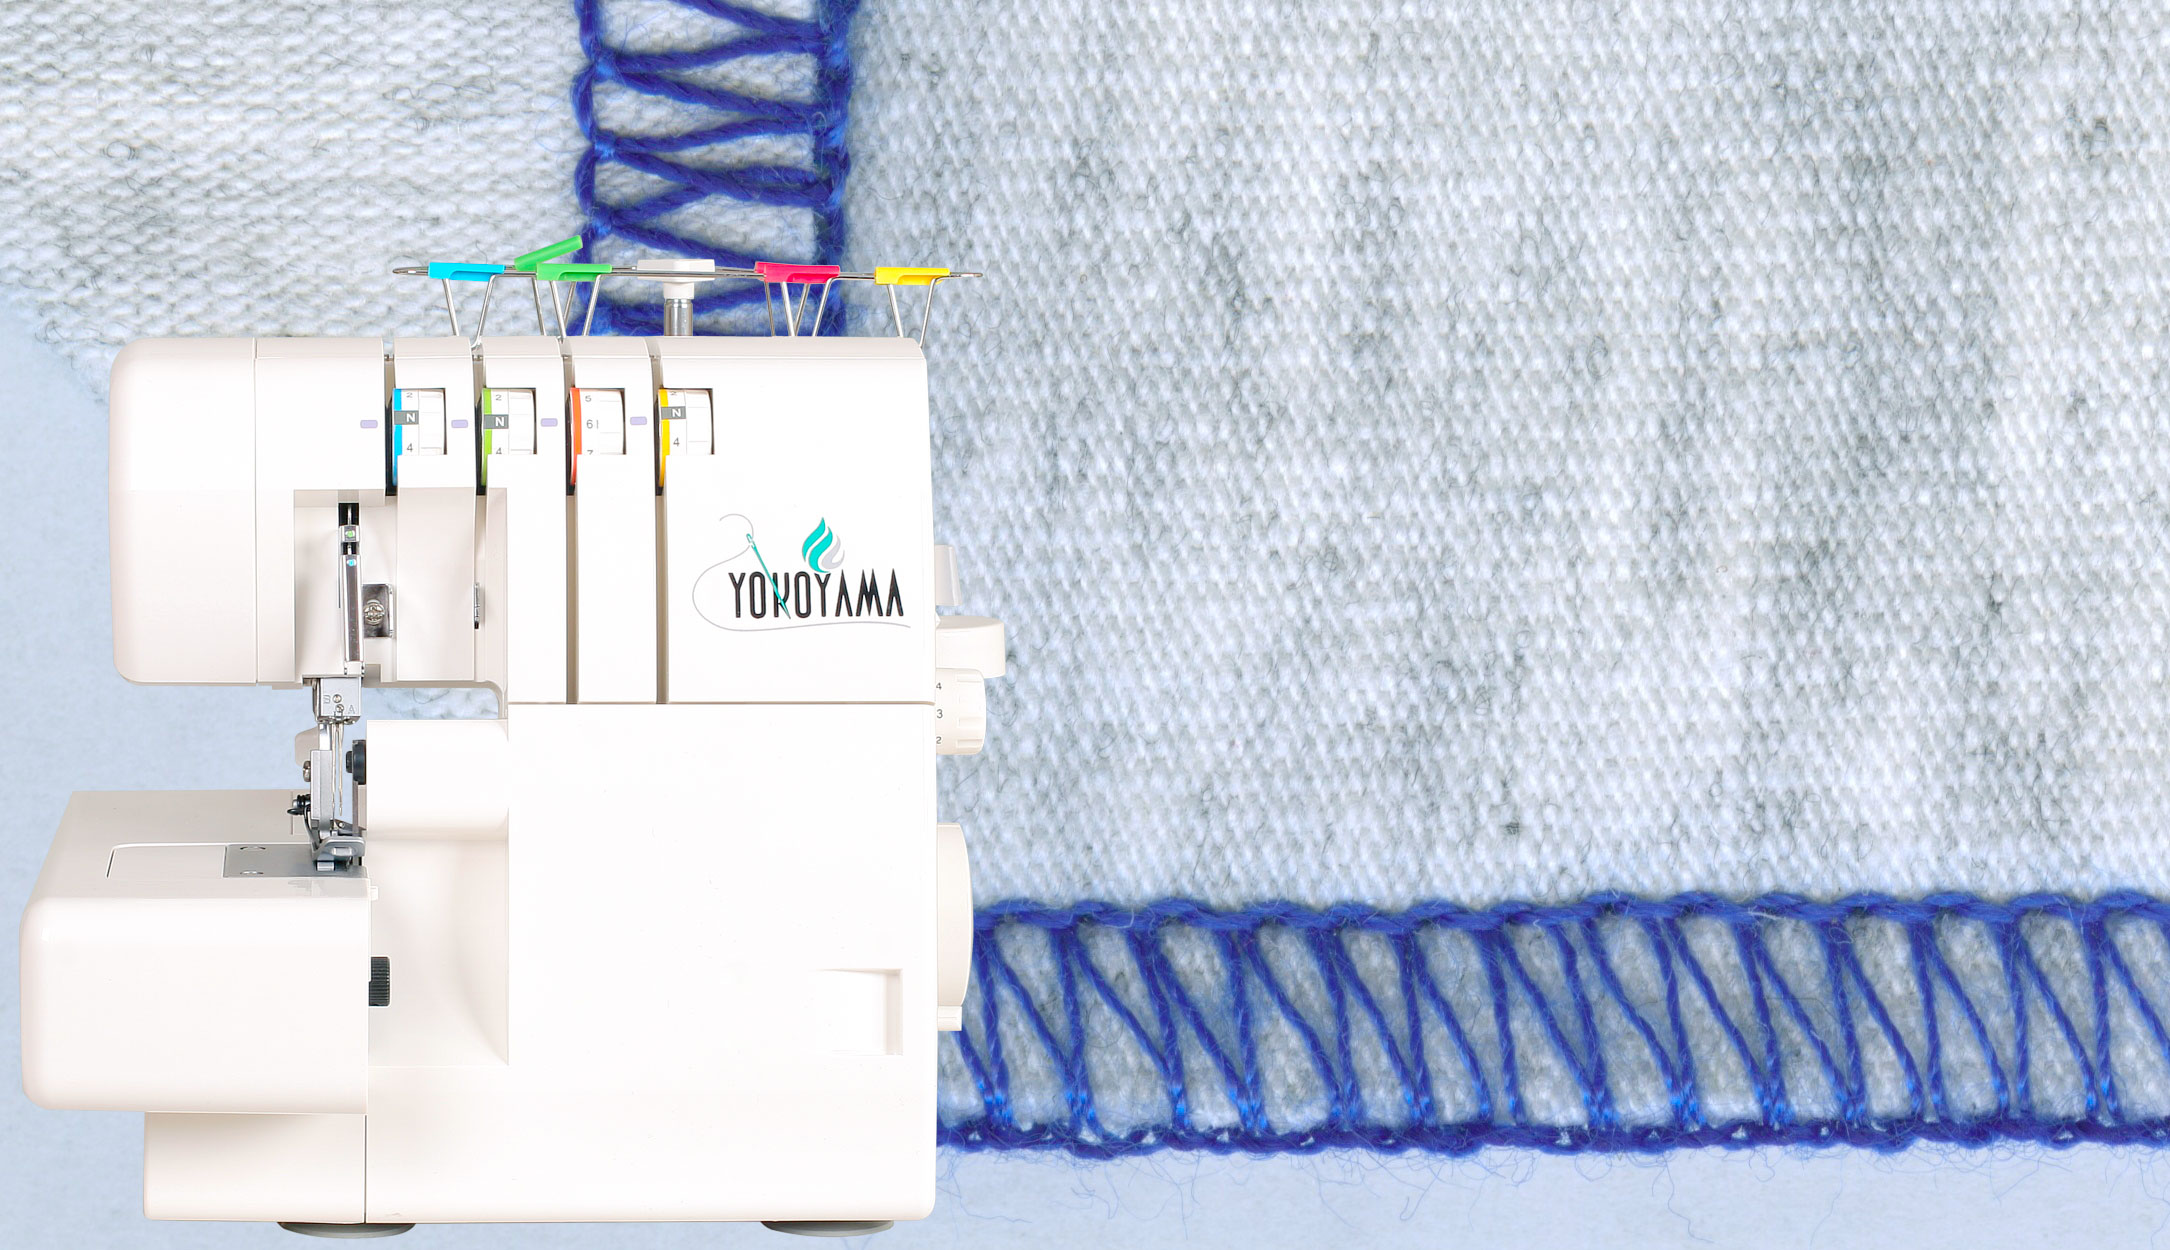 Maquina de coser Yokoyama KP8855 — Magic Center